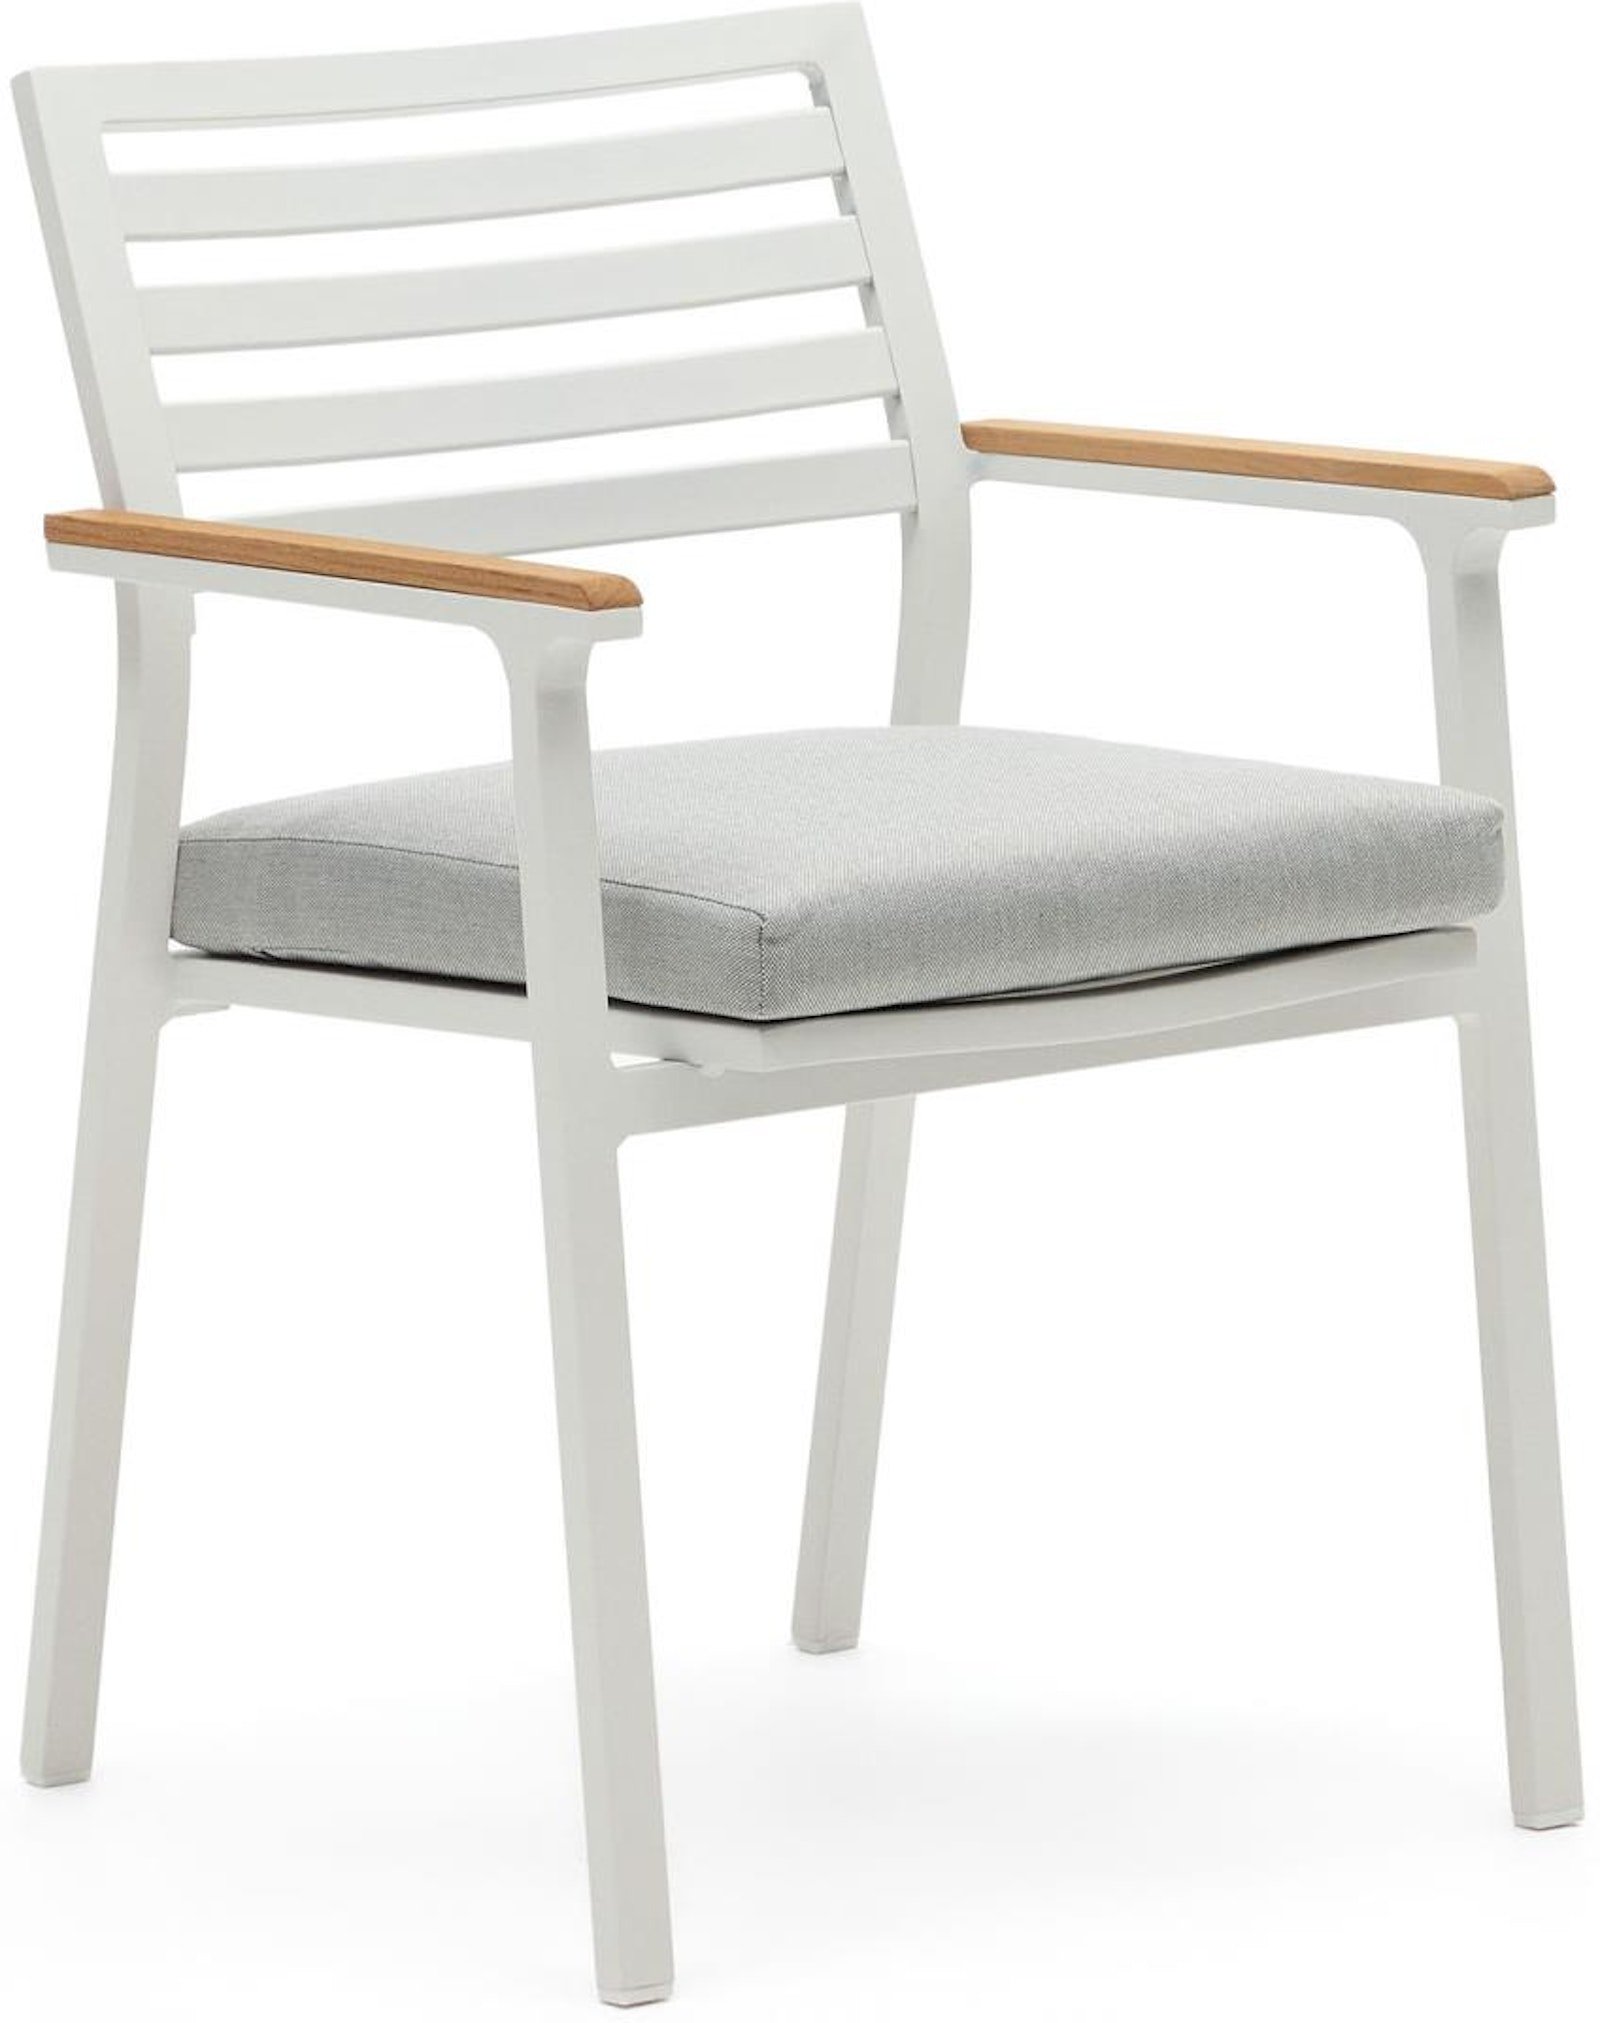 Bona, Udendørs stol, nordisk, moderne, metal by Laforma (H: 83 cm. x B: 57 cm. x L: 55 cm., Hvid/Natur)